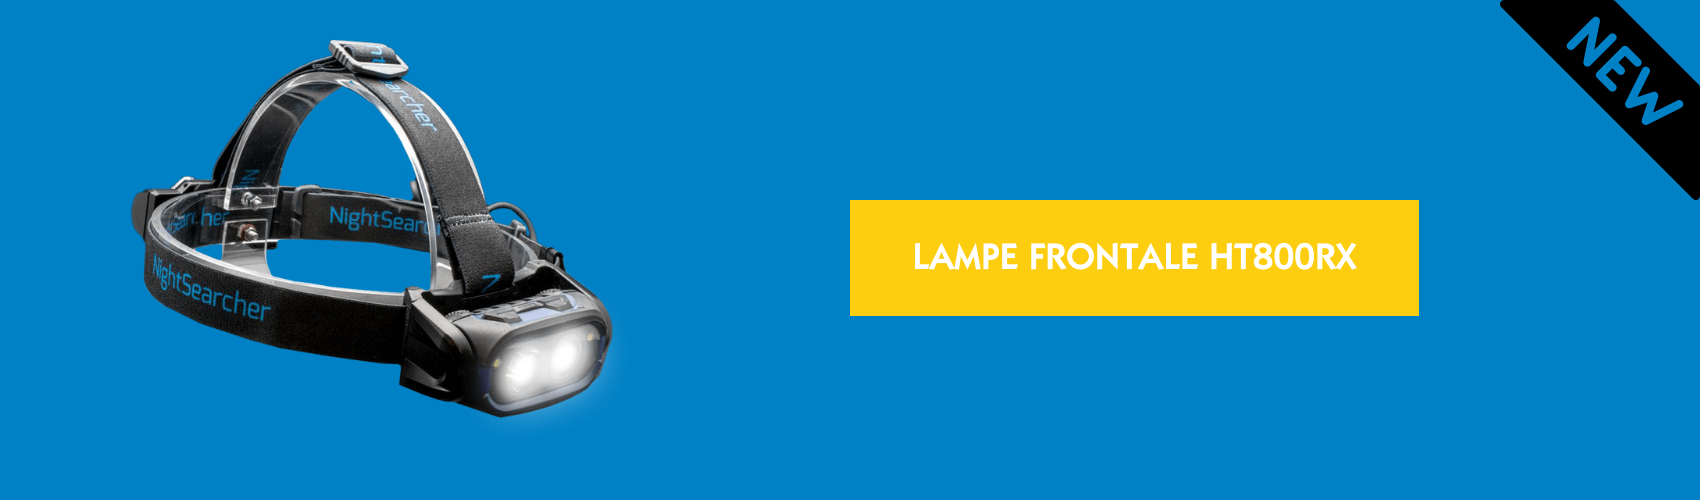 NOUVEAUTÉ PRODUIT _ LAMPE FRONTALE HT800RX